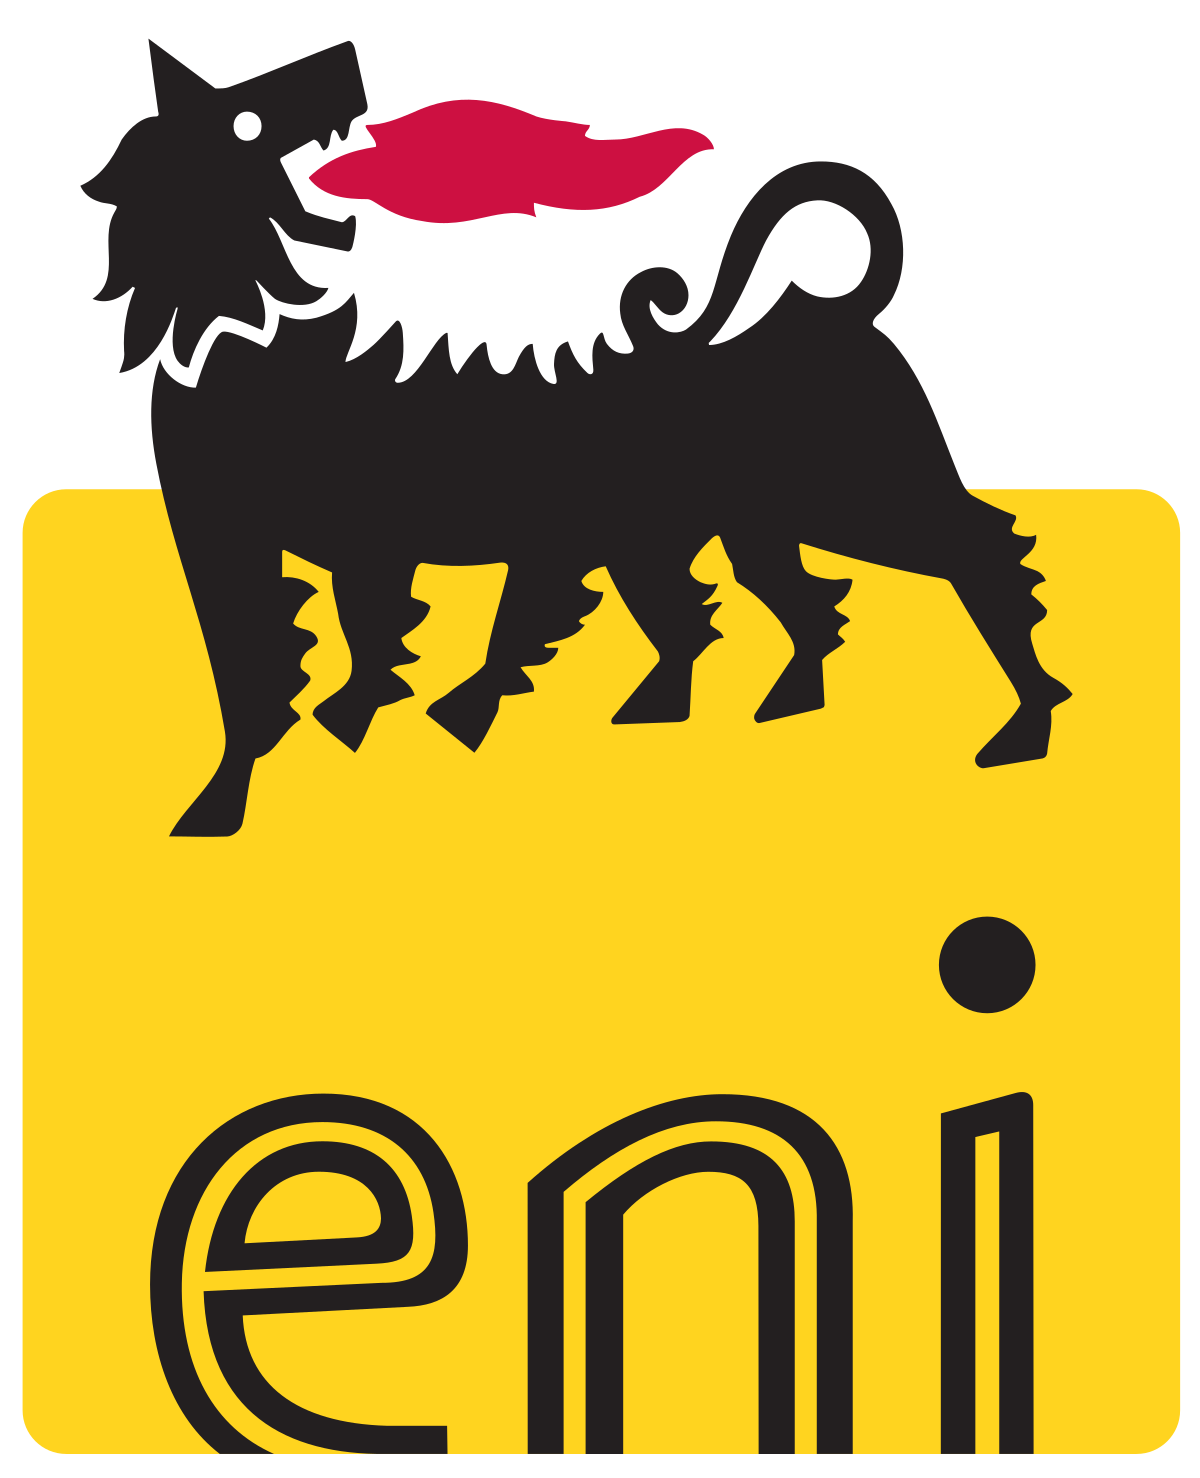 Eni je nadnárodní ropná společnost se sídlem v Itálii